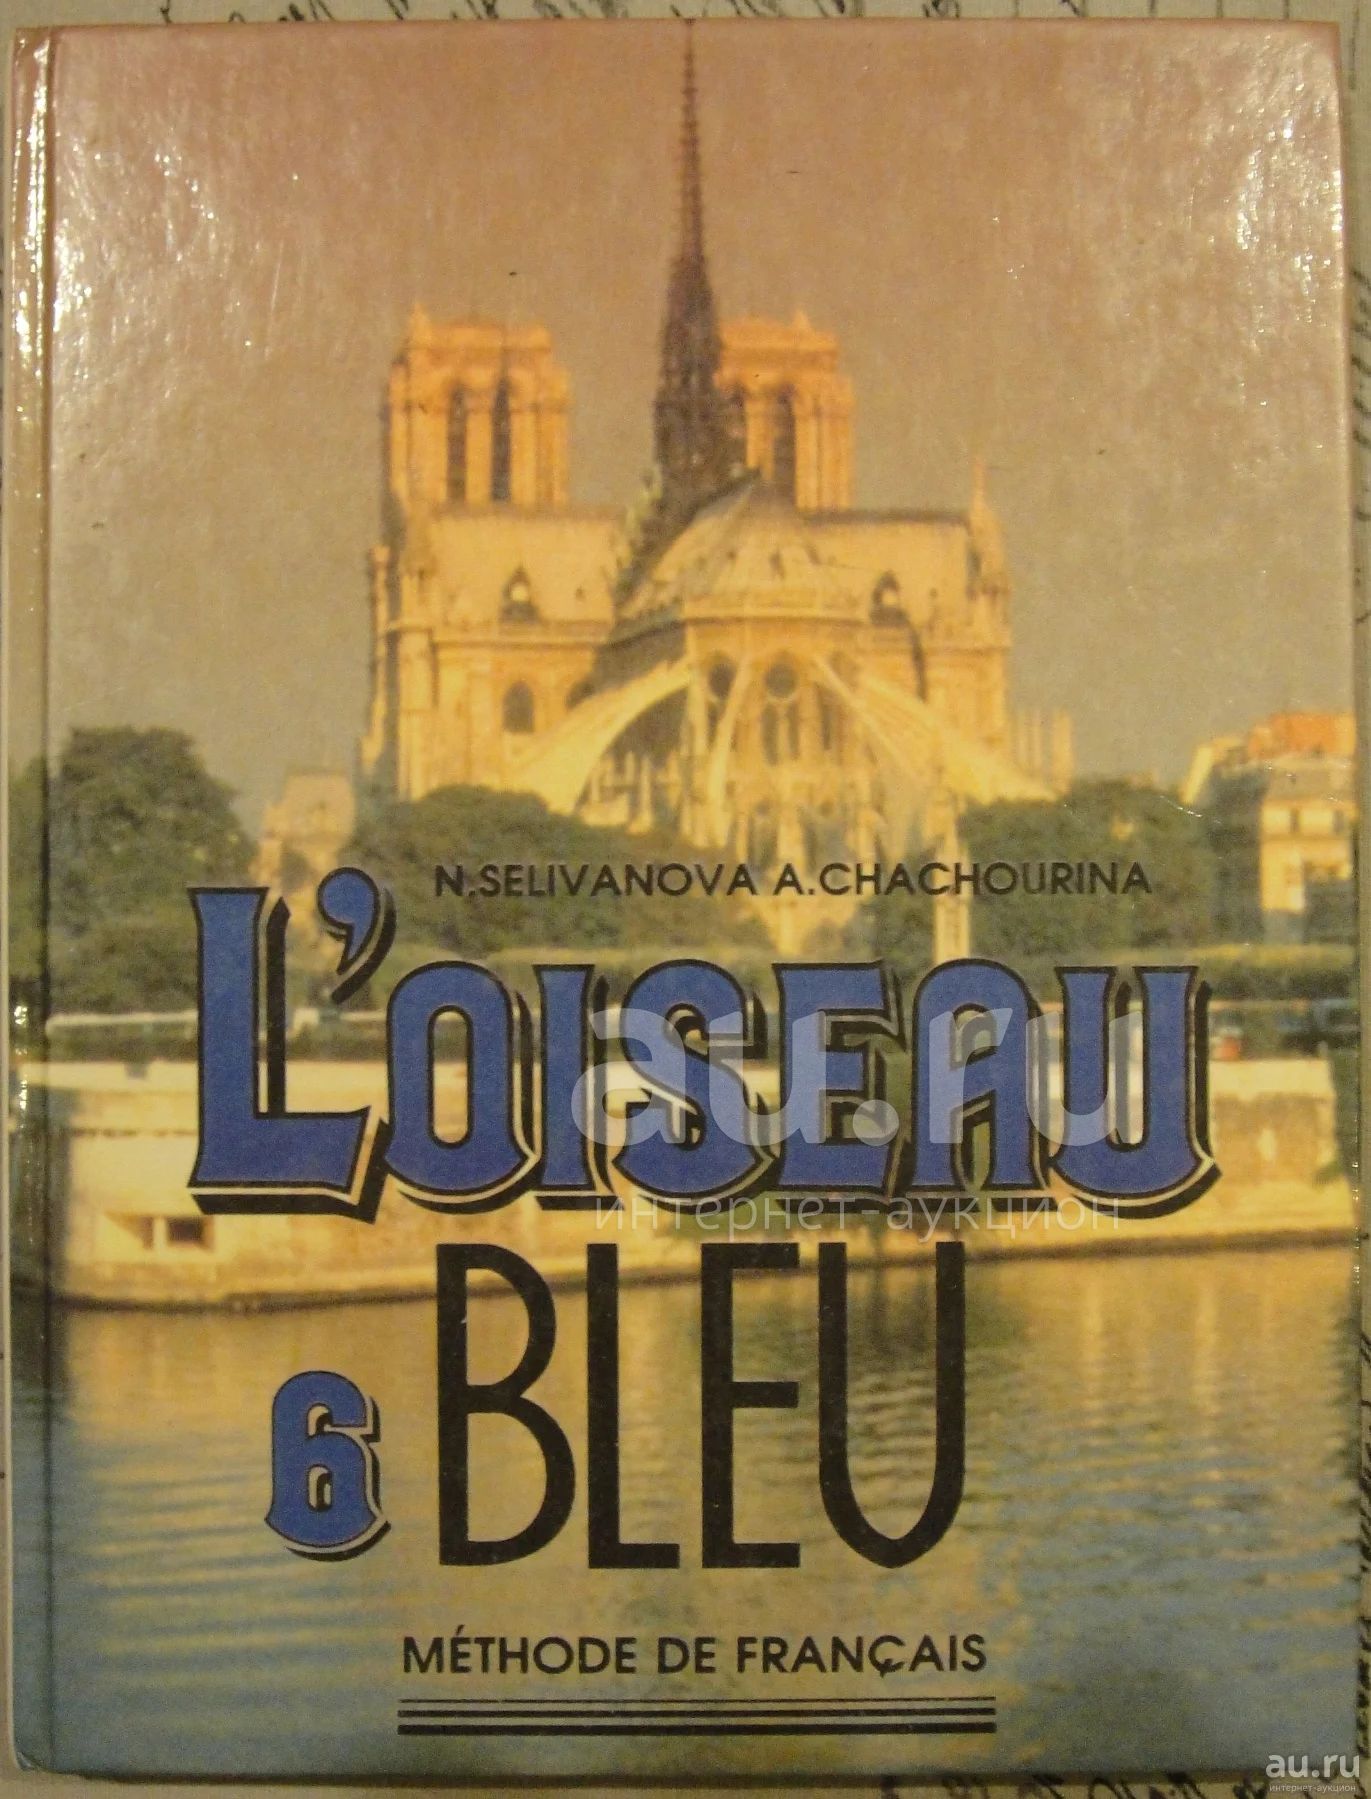 Учебник французского 6 класс читать. Loiseau bleu 5: Methode de Francais / французский язык. 5 Класс. УМК 6 класс Loiseau bleu. Французский язык l'oiseau bleu 9 класс. Учебник французского языка 6 класс.